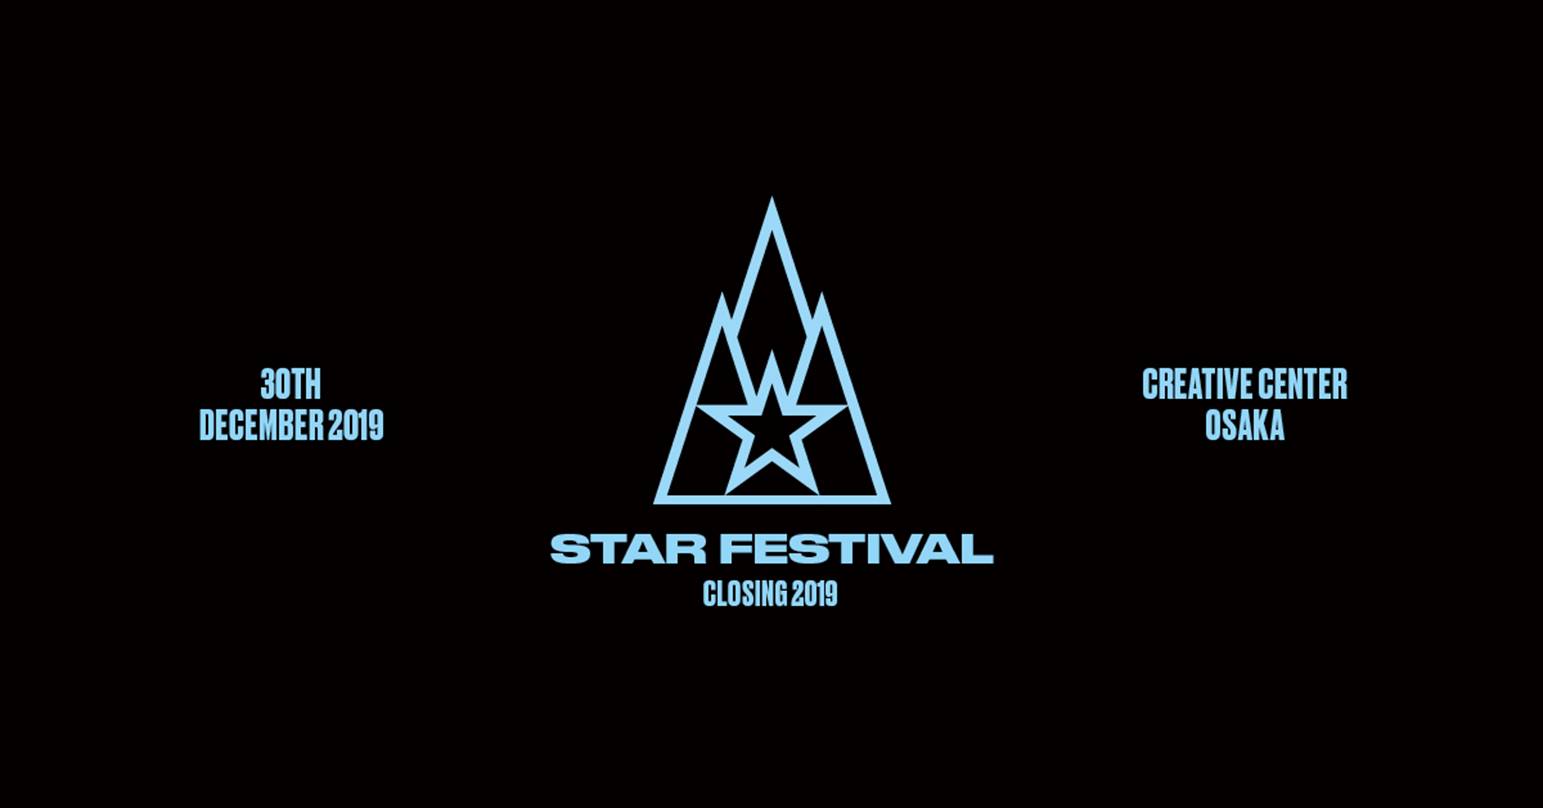 STAR FESTIVAL CLOSING 2019